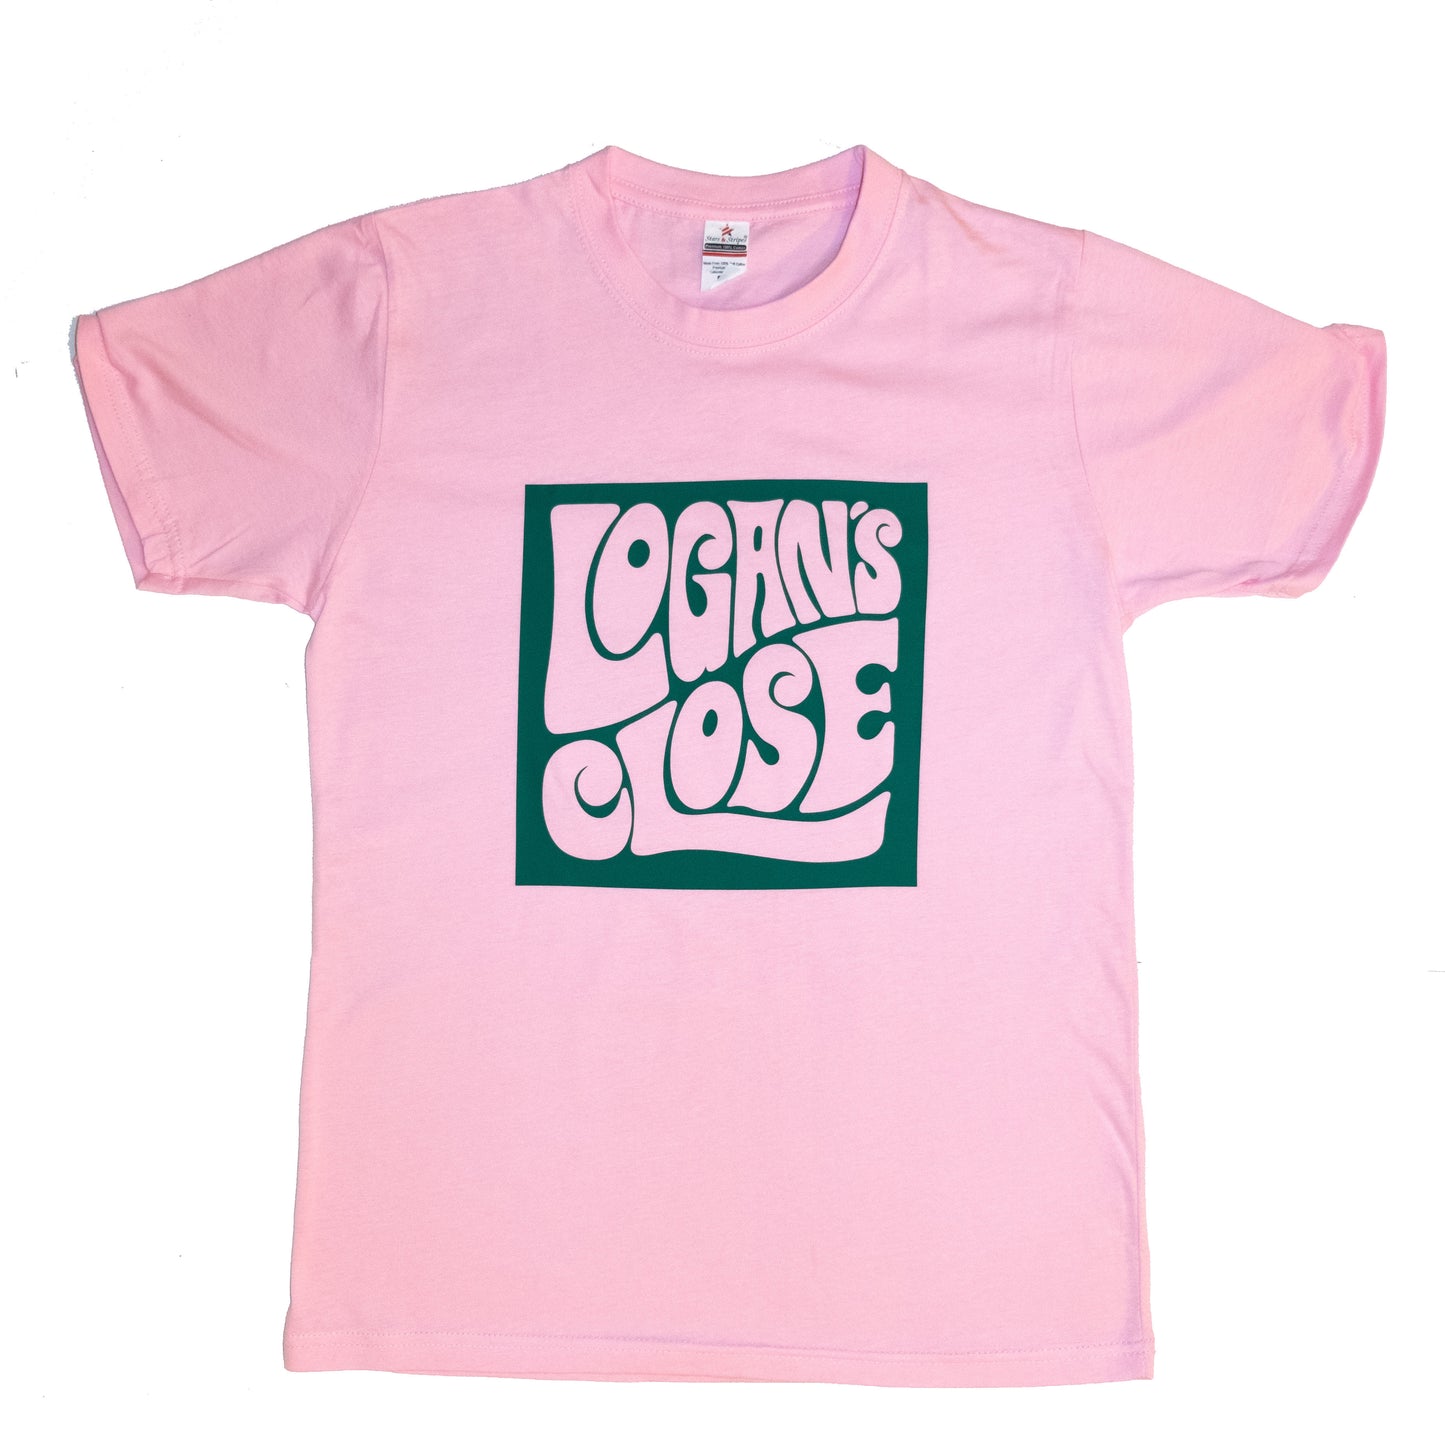 Camiseta con logo Logan's Close - Rosa/Verde